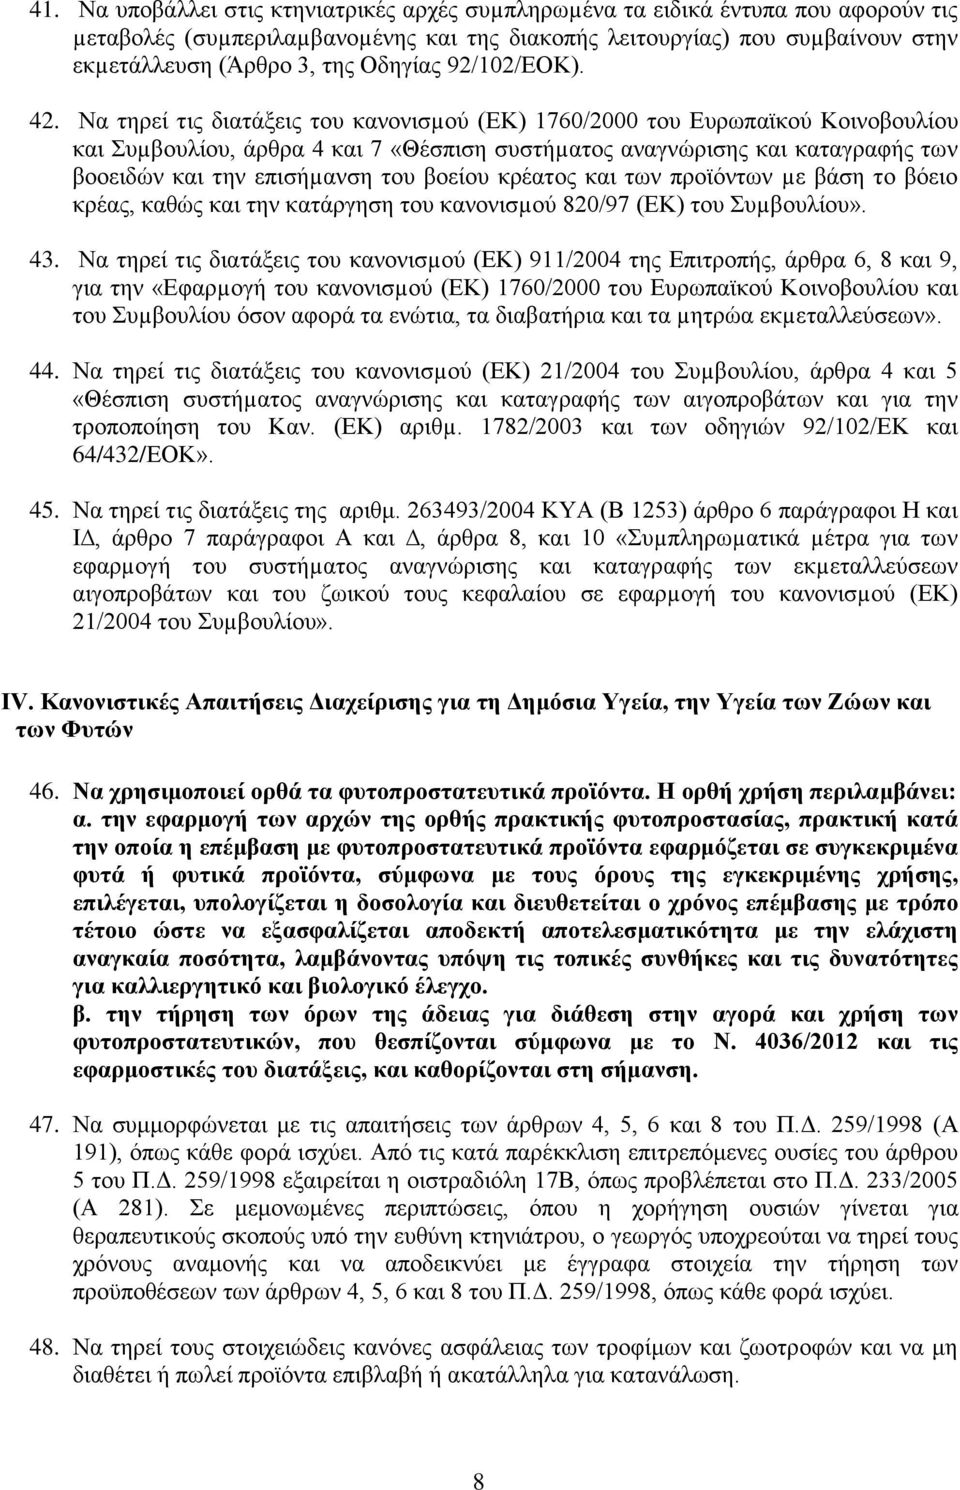 Να τηρεί τις διατάξεις του κανονισµού (ΕΚ) 1760/2000 του Ευρωπαϊκού Κοινοβουλίου και Συµβουλίου, άρθρα 4 και 7 «Θέσπιση συστήµατος αναγνώρισης και καταγραφής των βοοειδών και την επισήµανση του